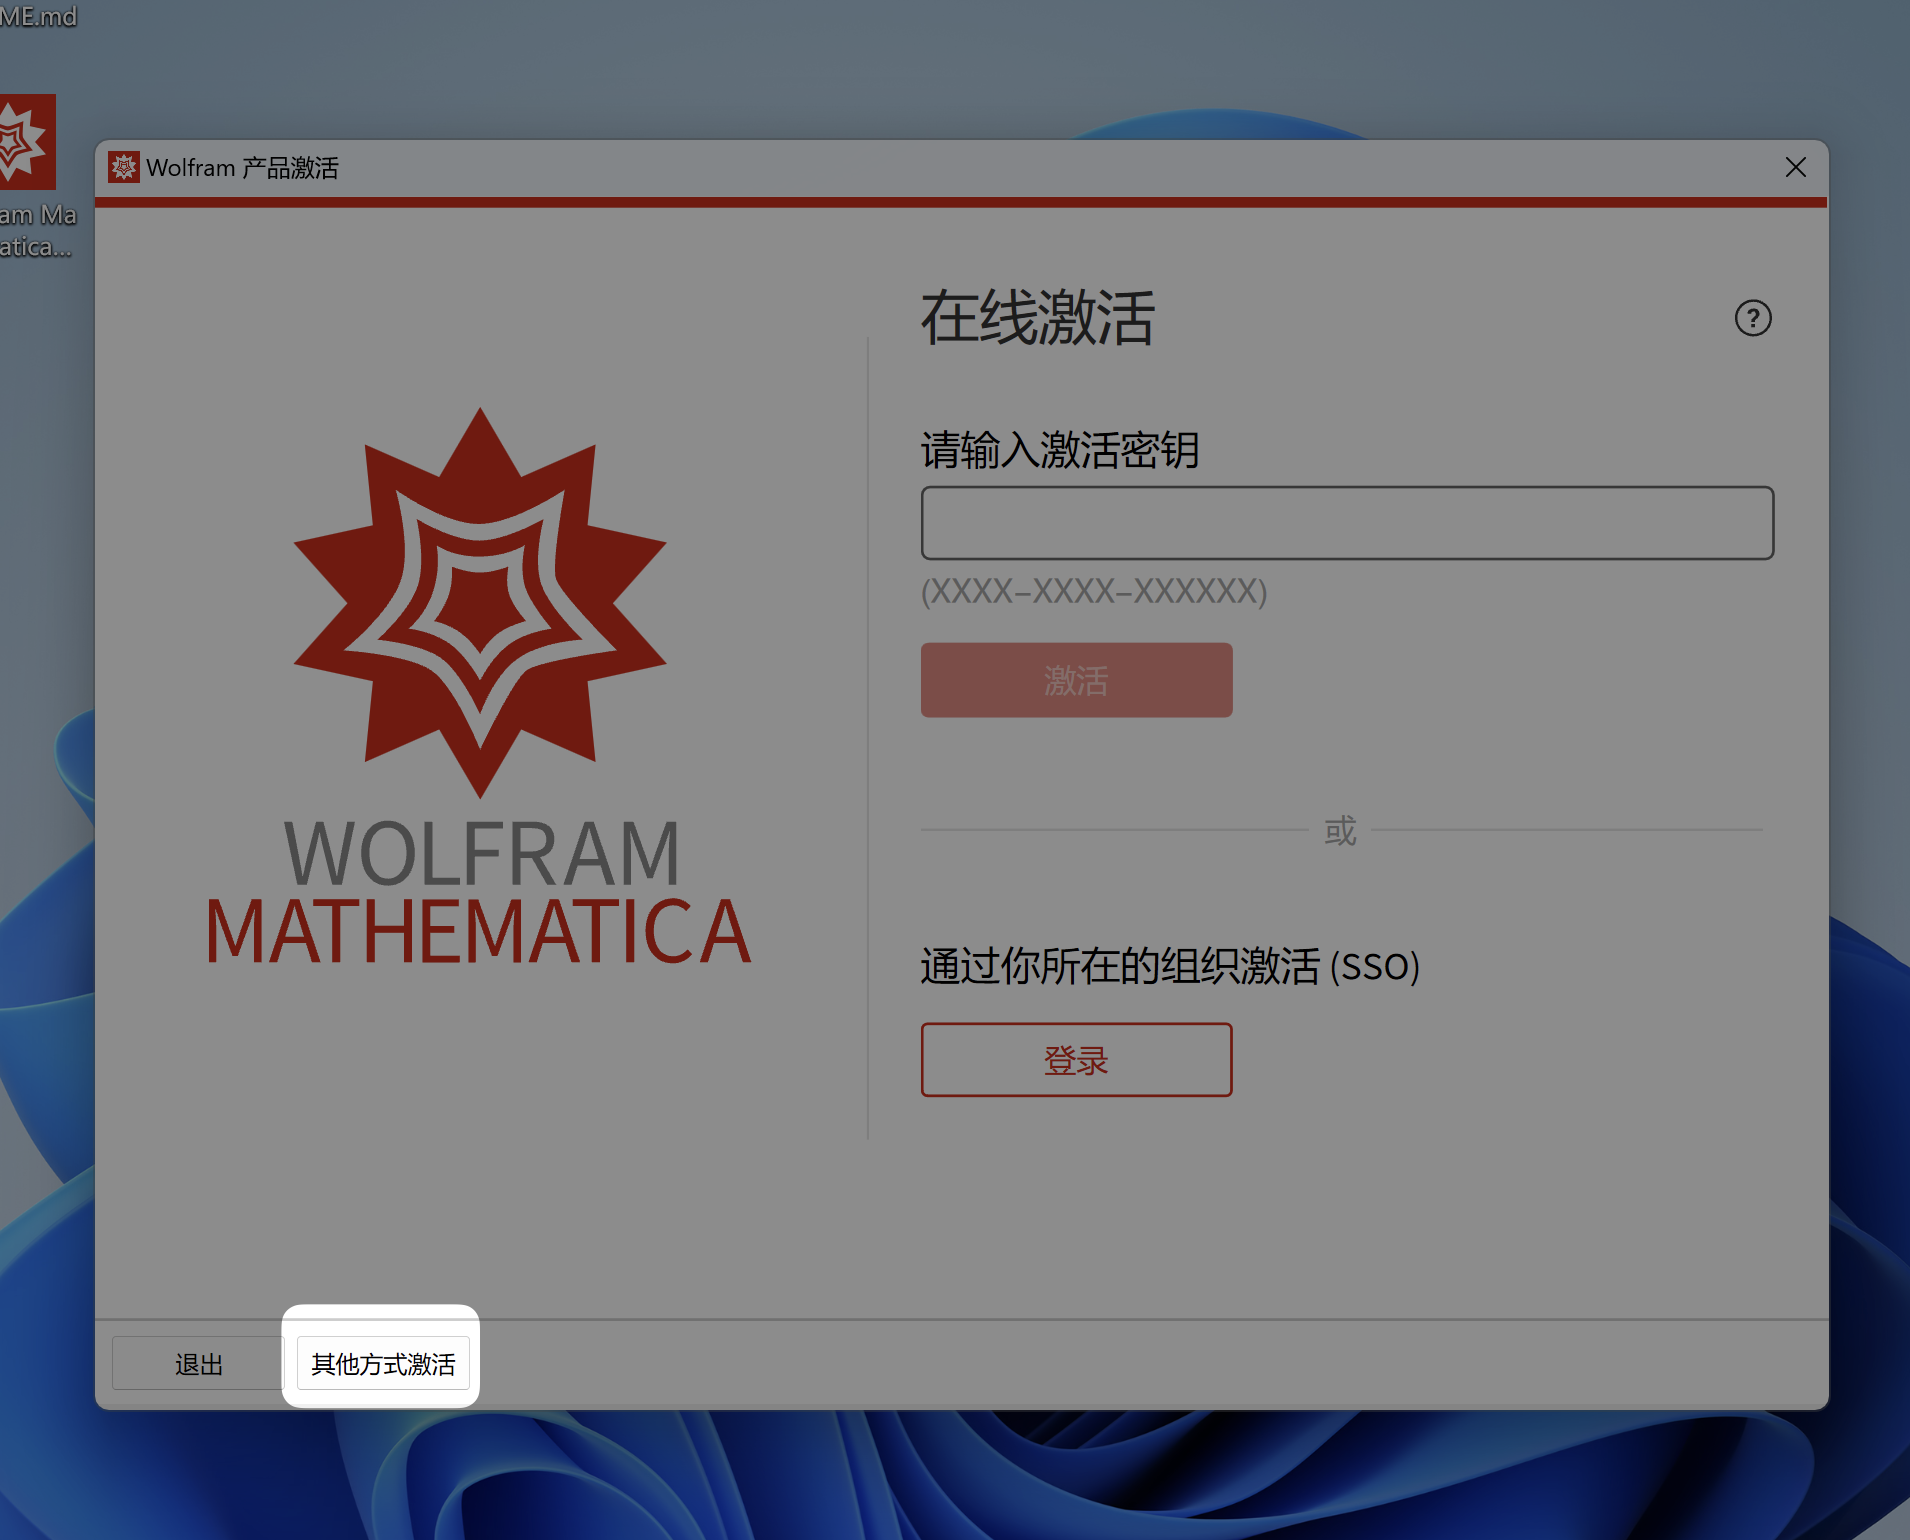 「互联网速记」也许是最优雅的 Wolfram Mathematica 破解方式 - 5